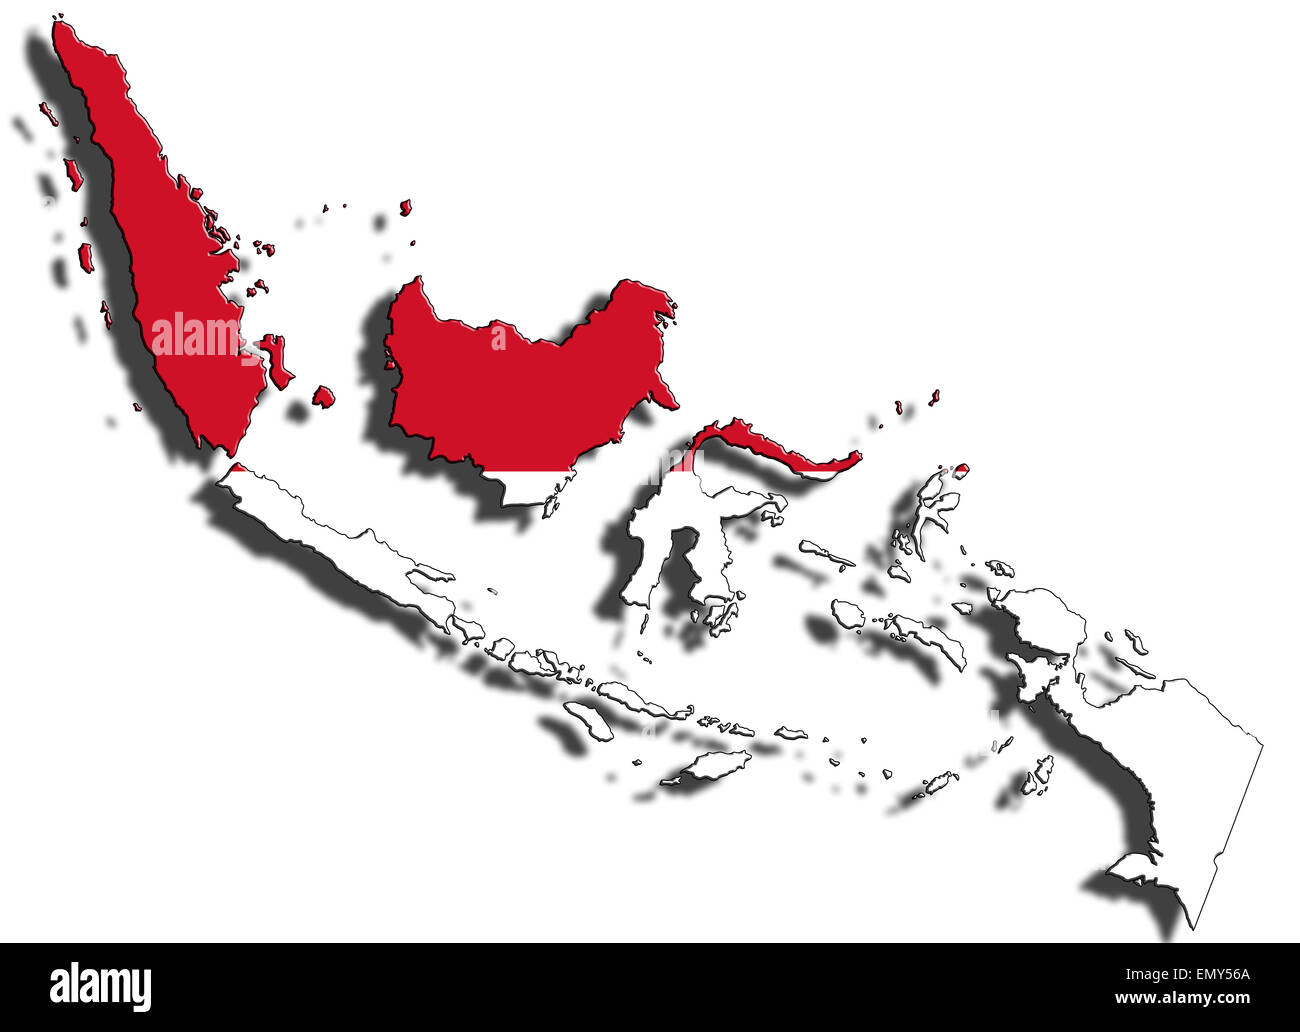 Esquema del límite nacional de Indonesia lleno con la bandera del país. Aislado sobre fondo blanco y colocando una sombra Foto de stock